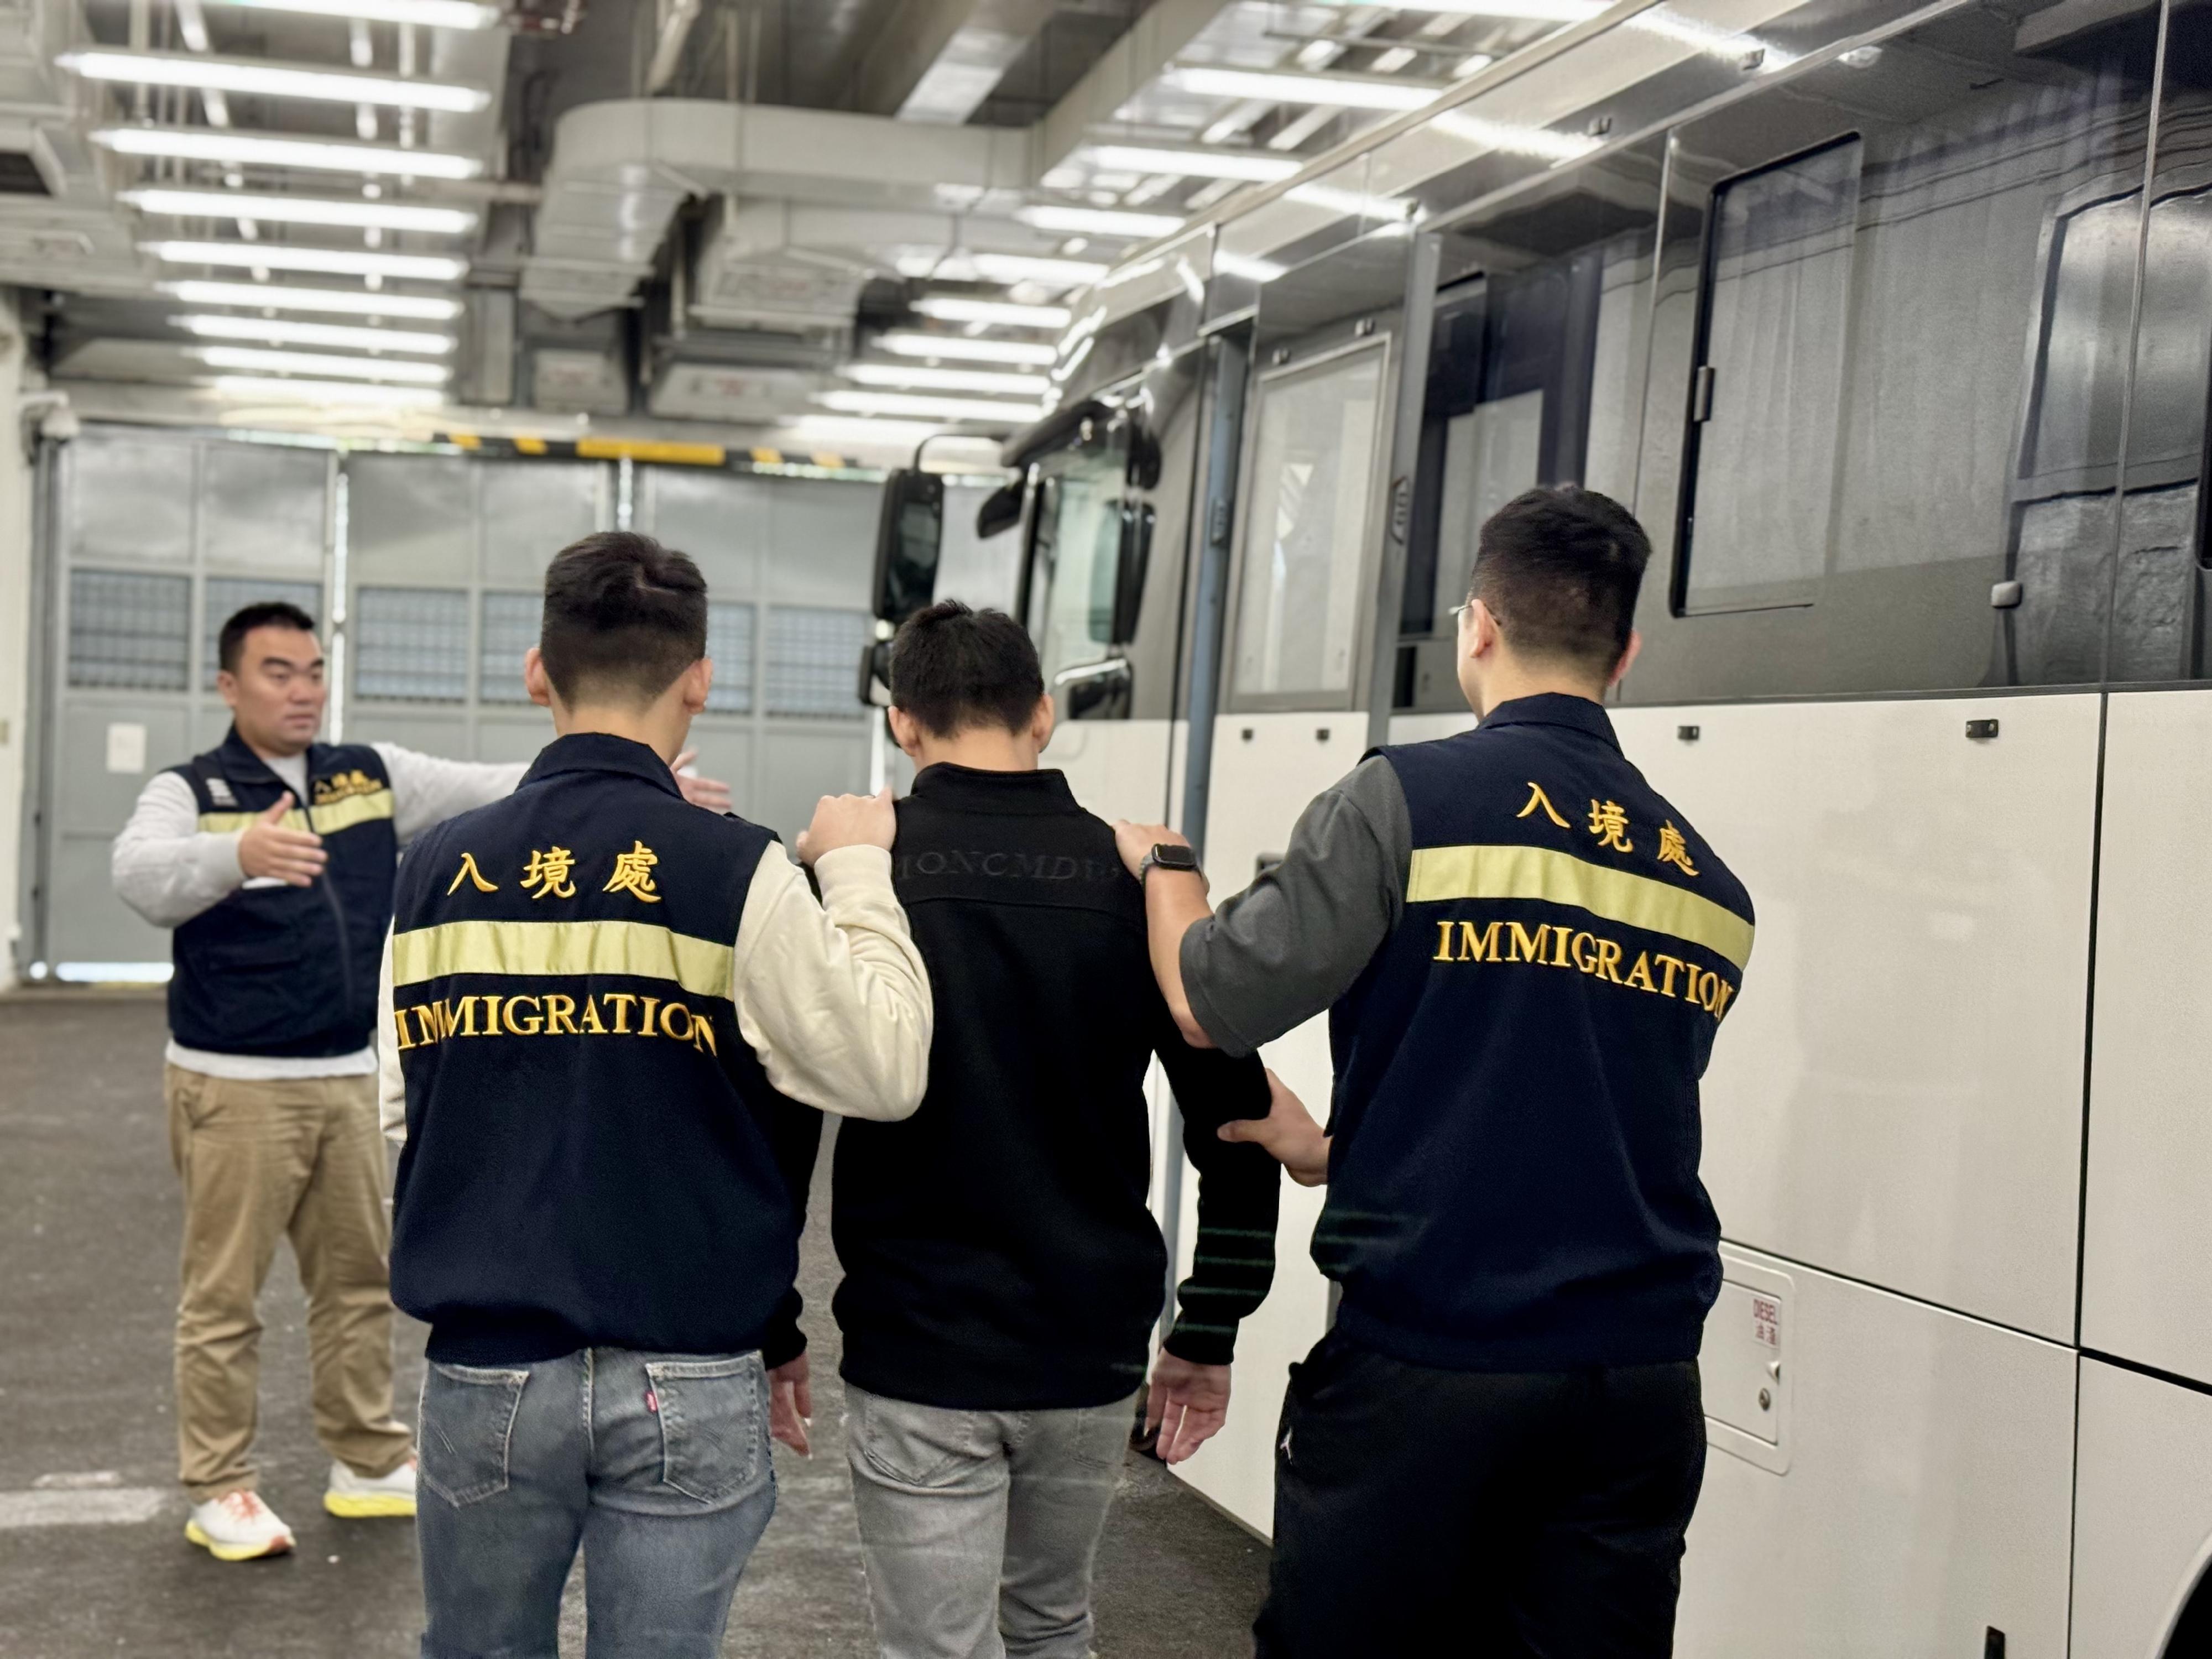 入境事务处（入境处）今日（十二月二十八日）执行遣送行动，将16名越南籍非法入境者遣返越南。图示被遣返人士在入境处人员押送下离开羁押地点前往机场。
